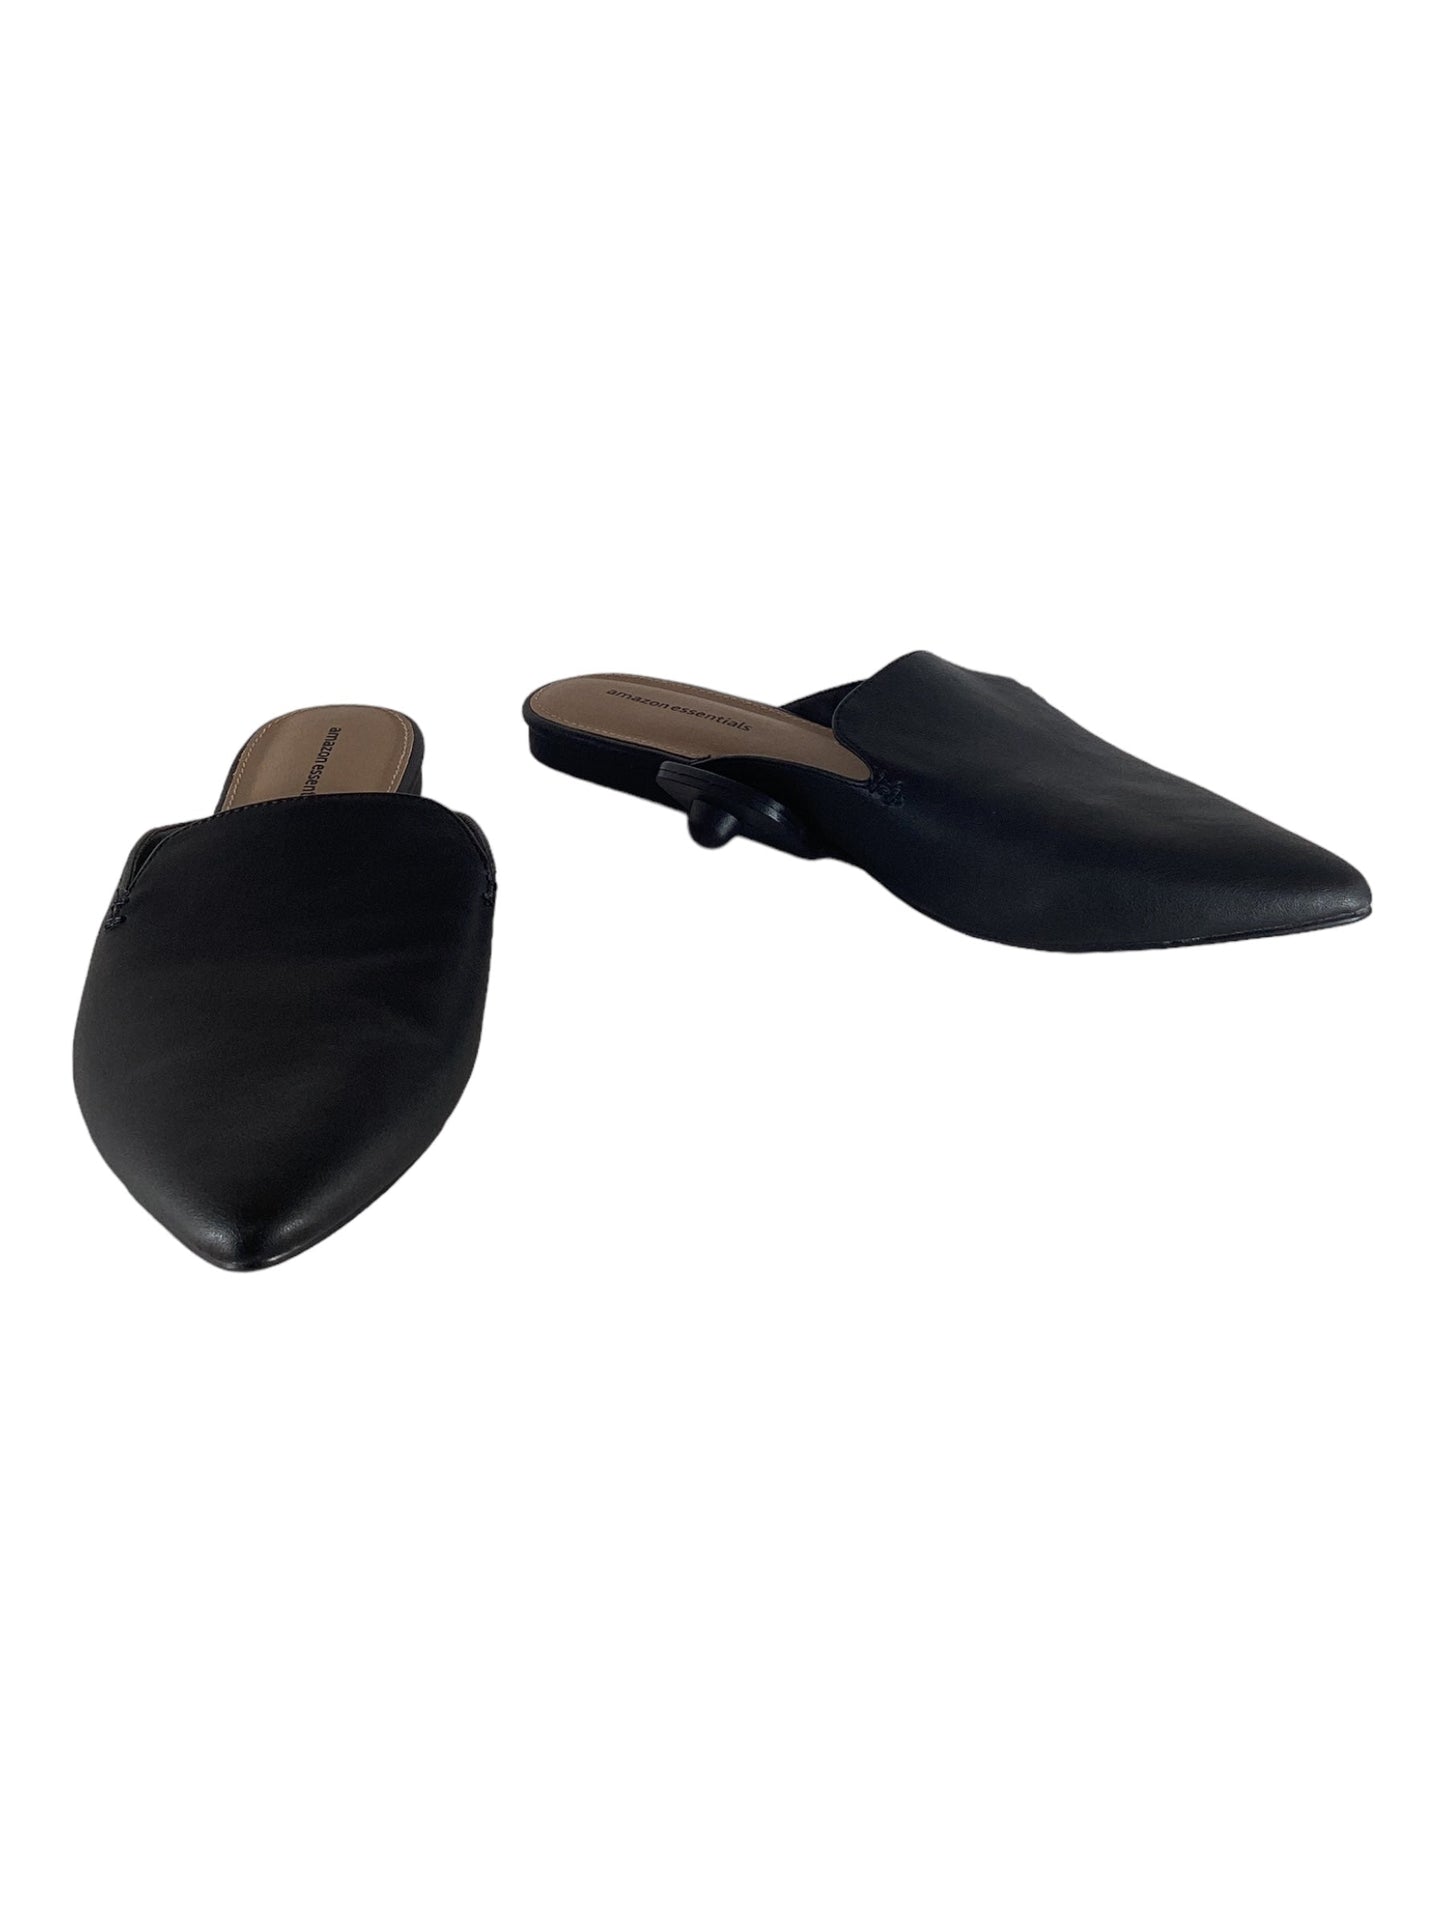 Black Shoes Flats Amazon Essentials, Size 8